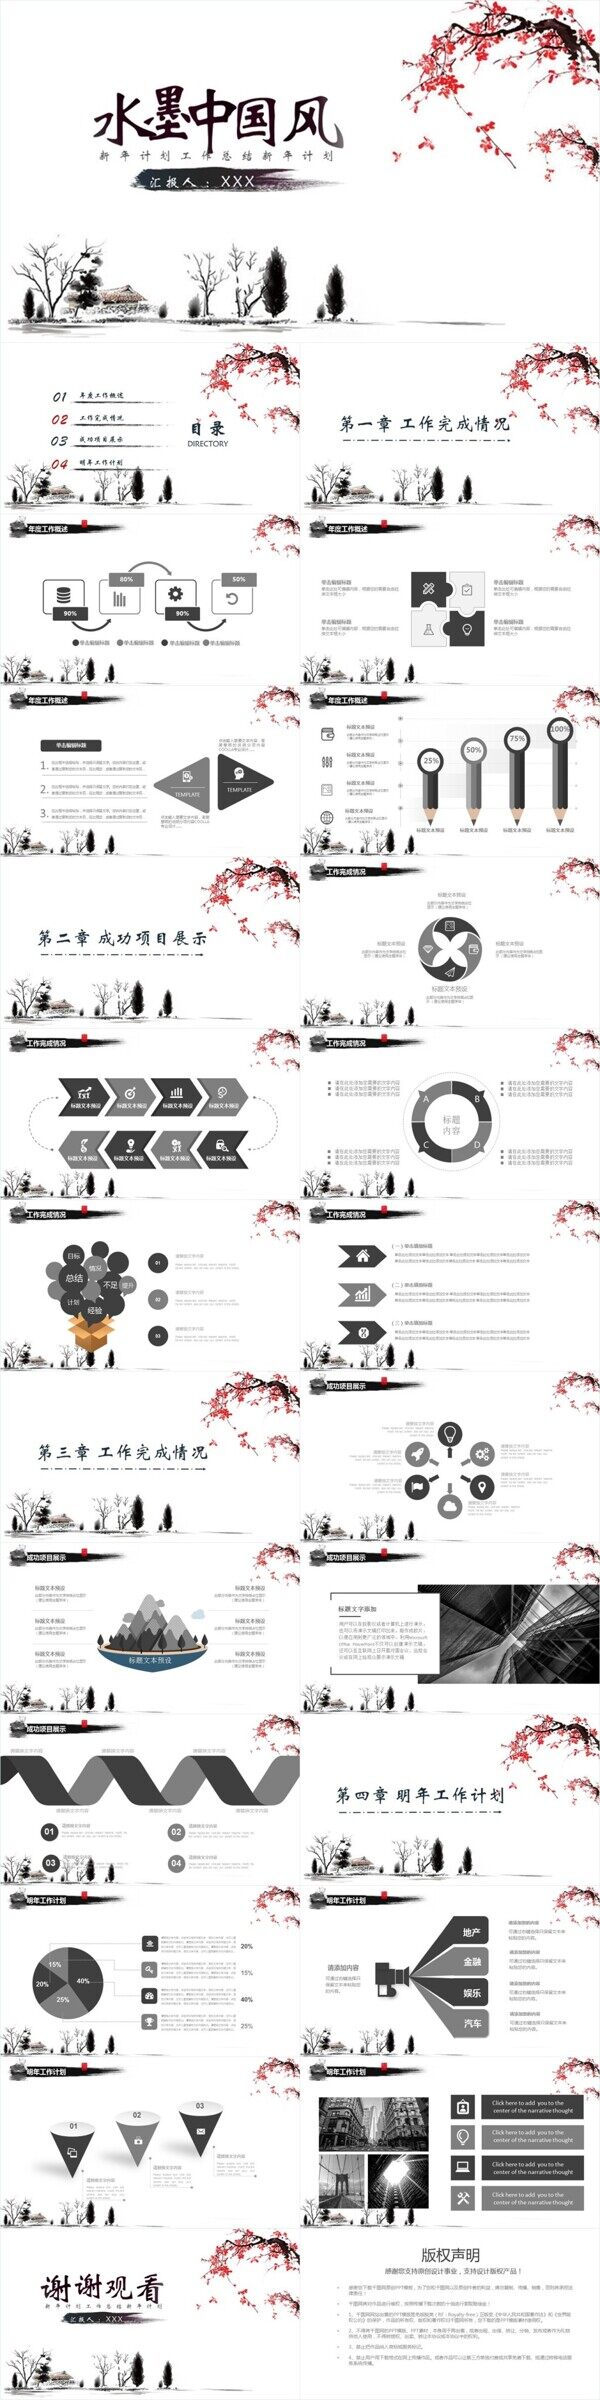 古典中国风水墨总结动态ppt创意设计模板